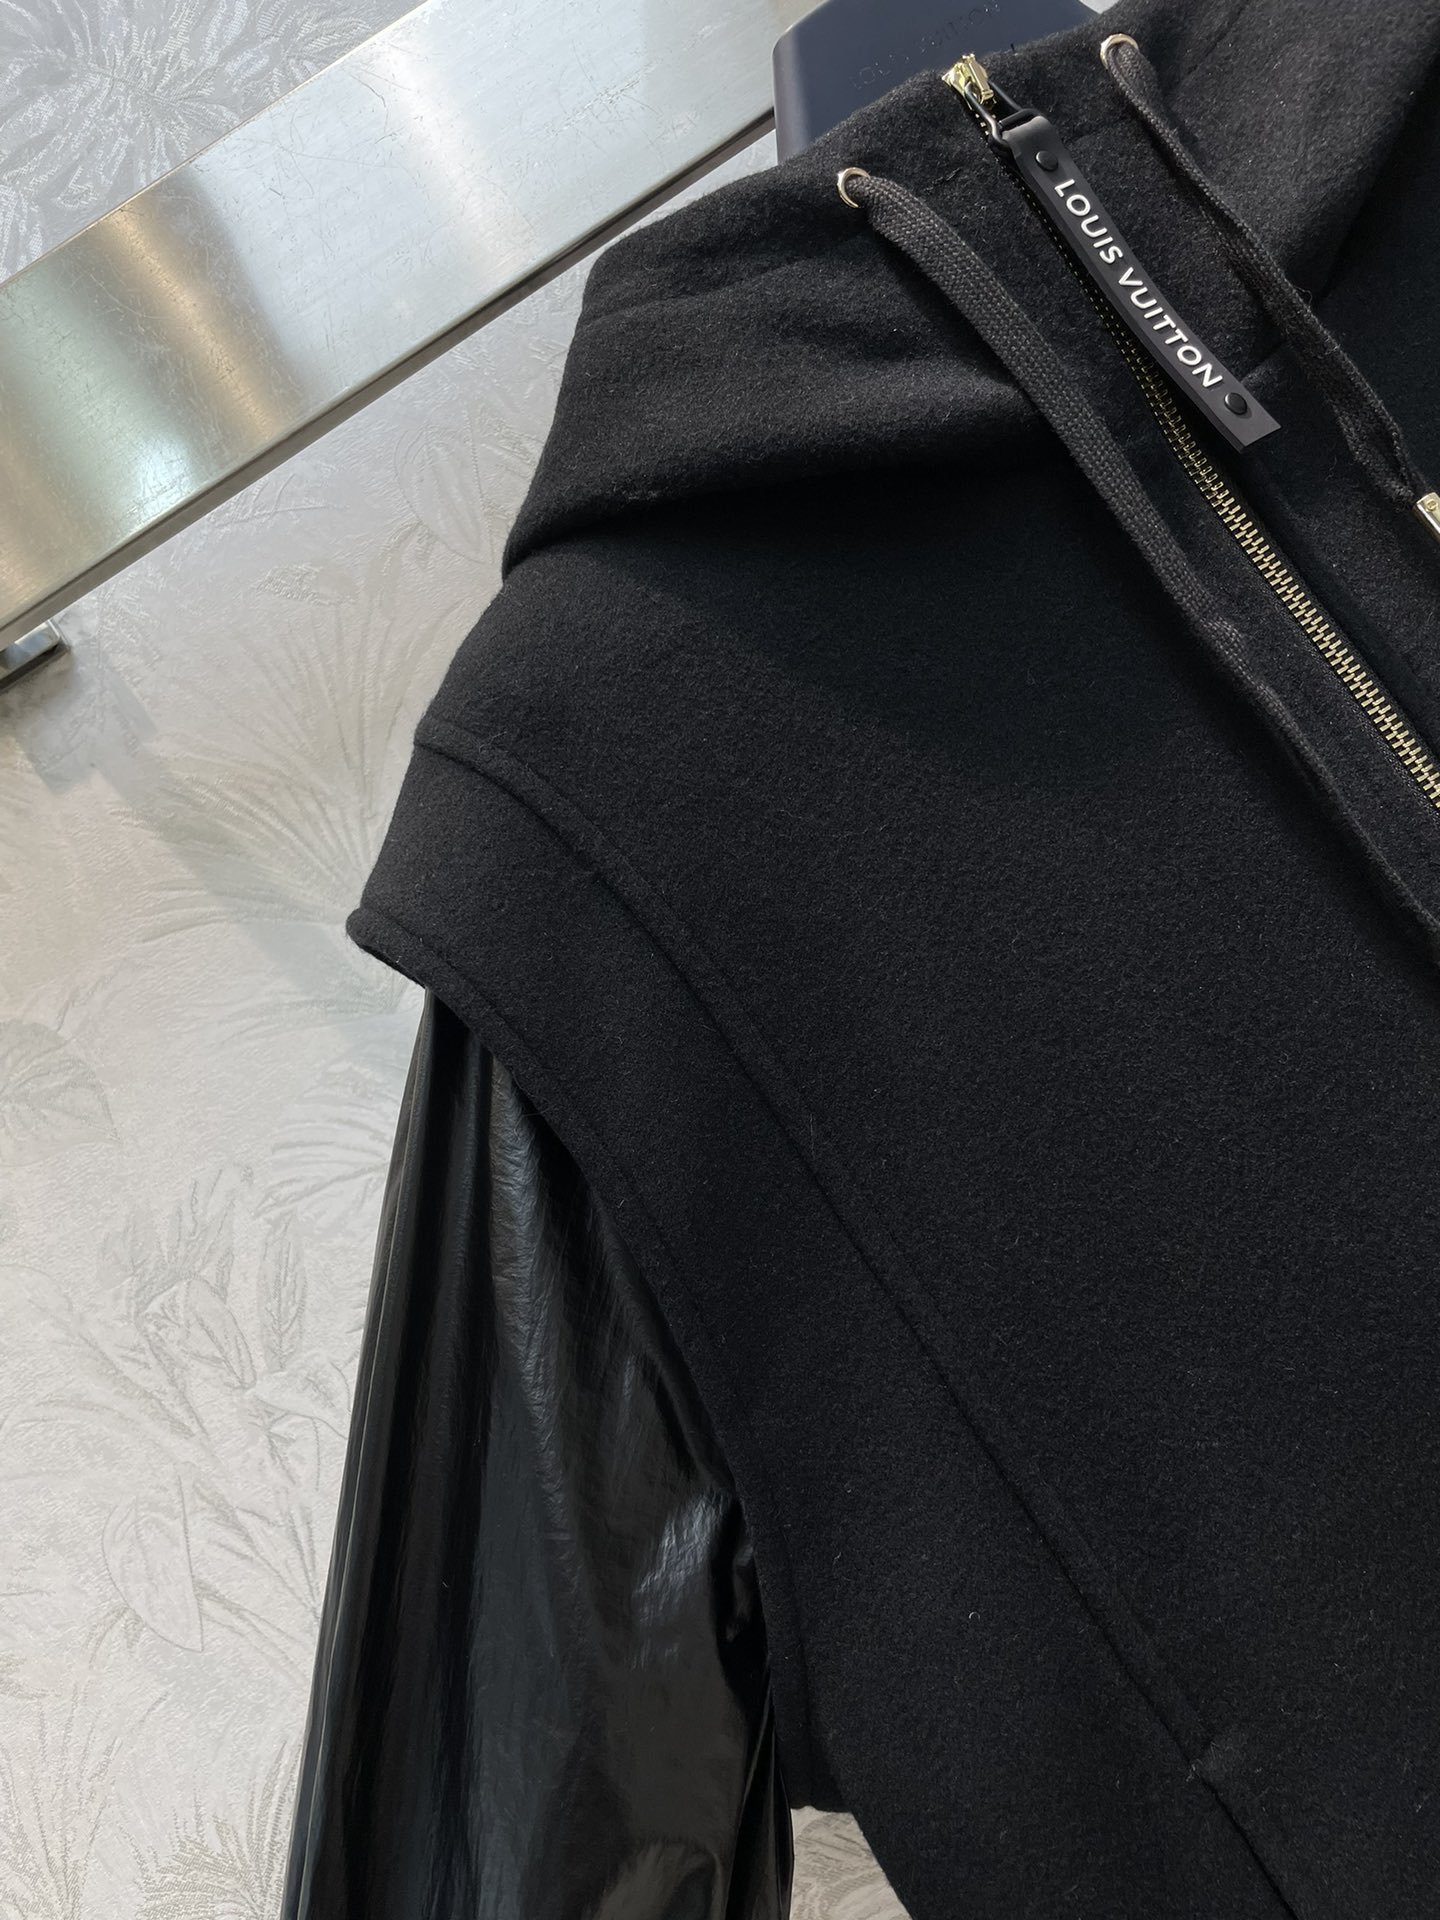 L家23秋冬新款连帽立领拼接将两件夹克外套面料质感绝绝子配有当季标志性胶牌Logo点缀袖口两侧的摁扣装饰